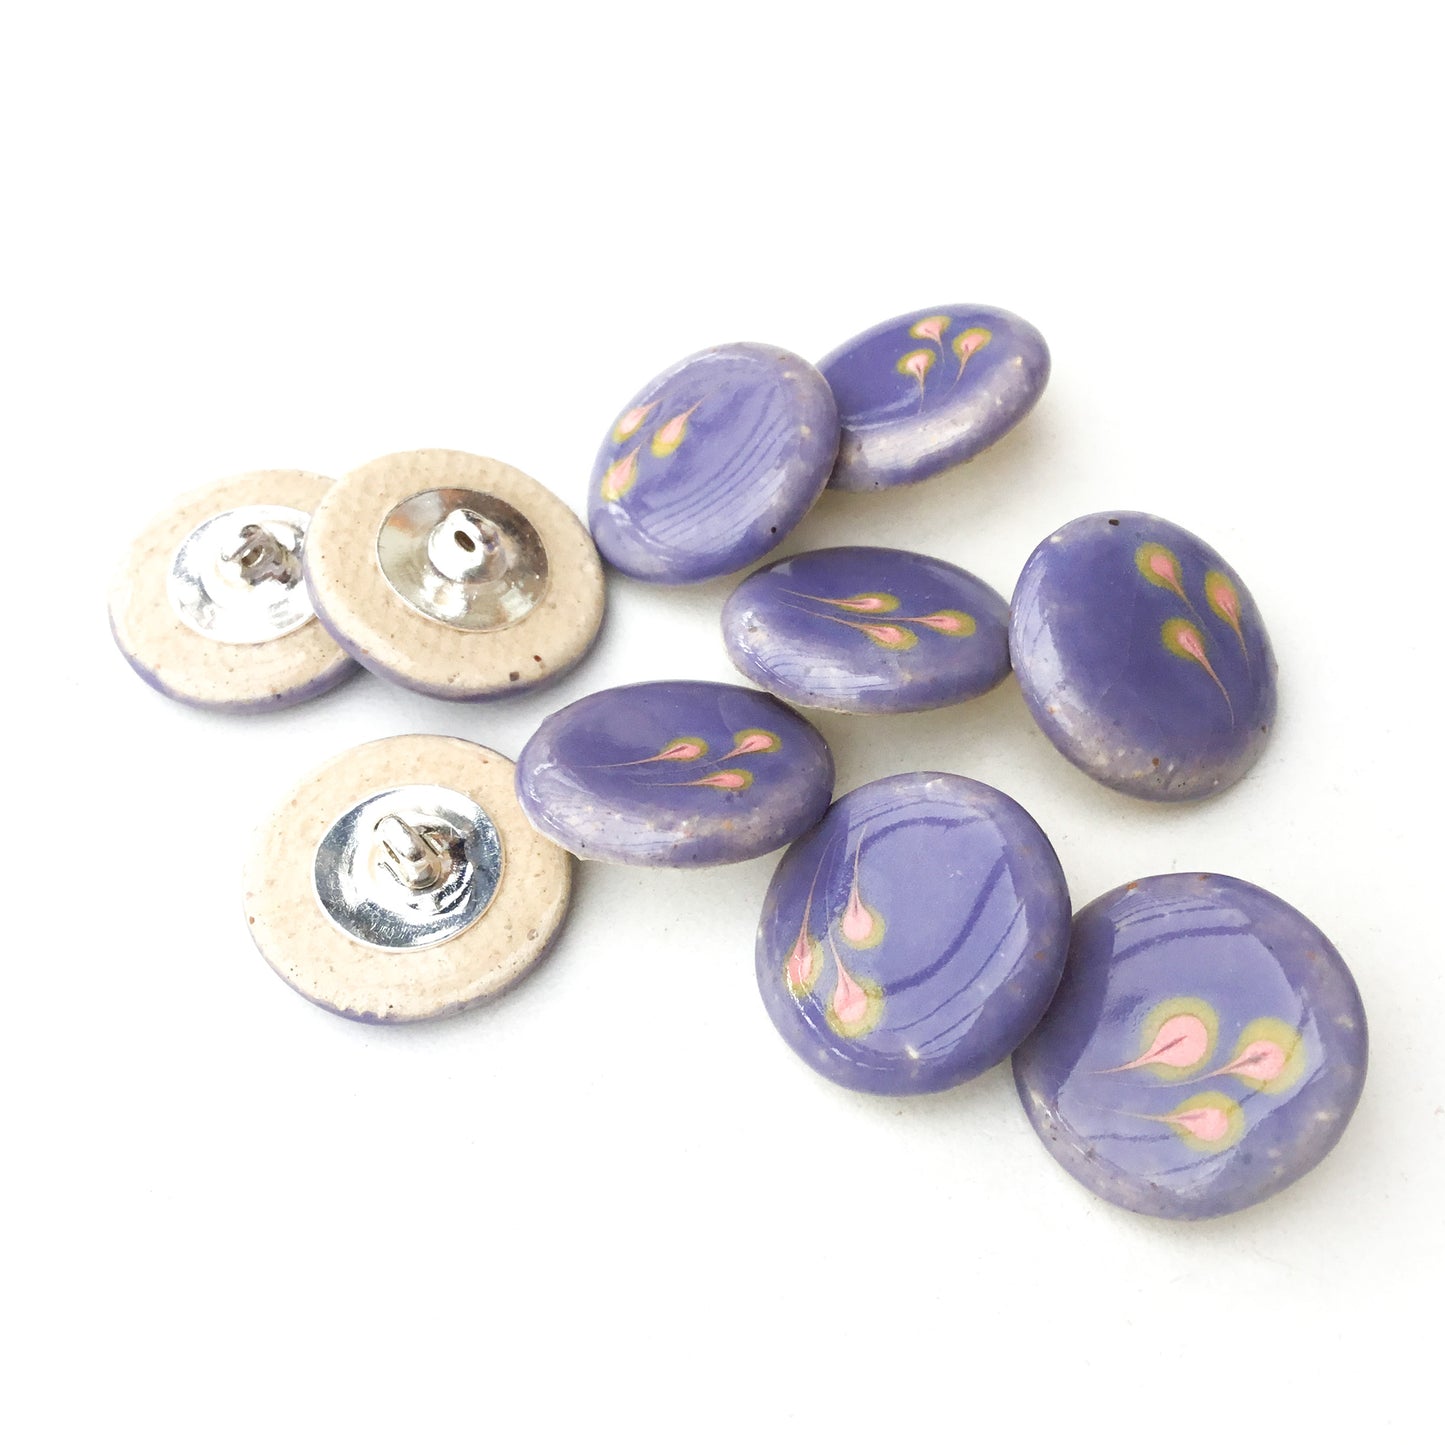 Periwinkle & Florets Ceramic Shank Buttons - 11/16"